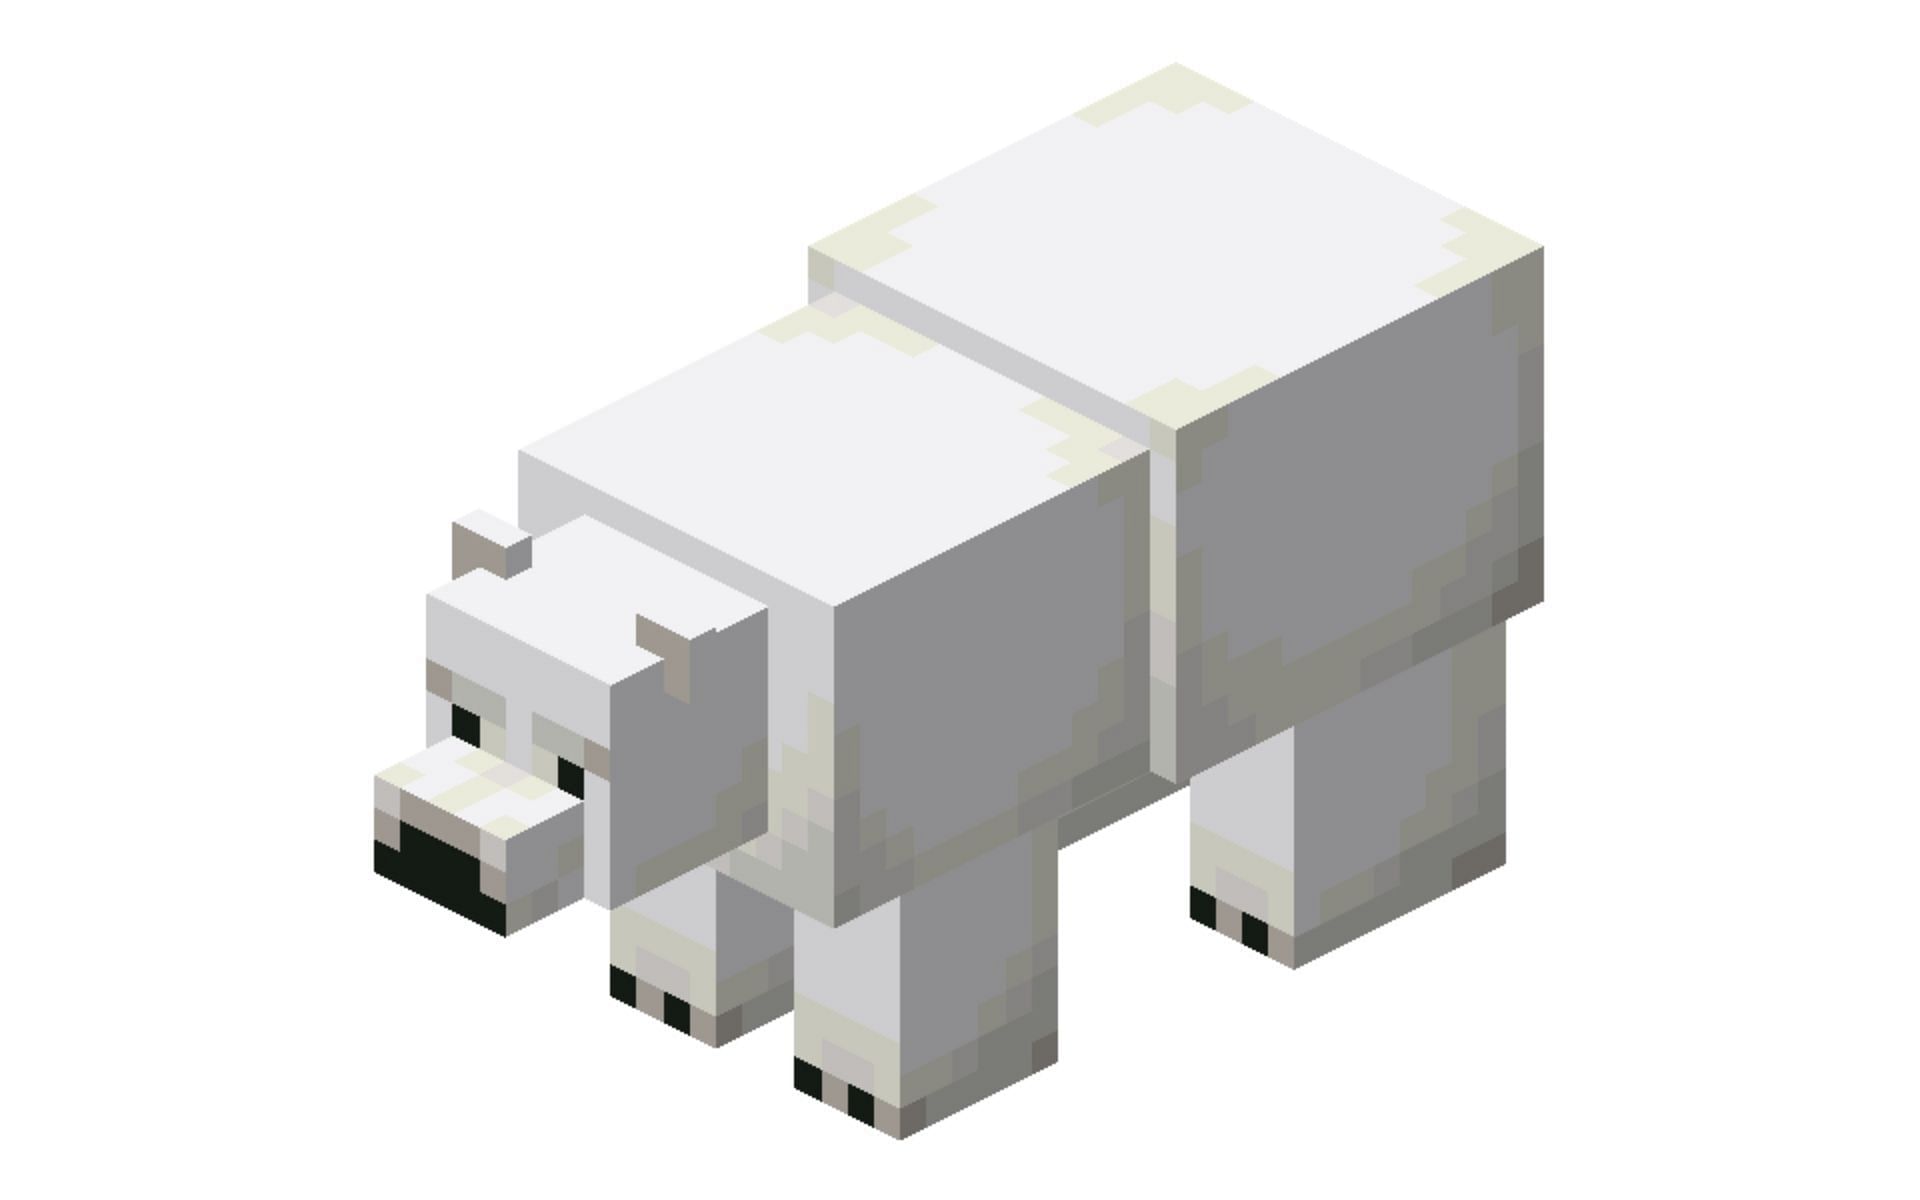 In-game model of the Polar Bear (Image via Fandom)